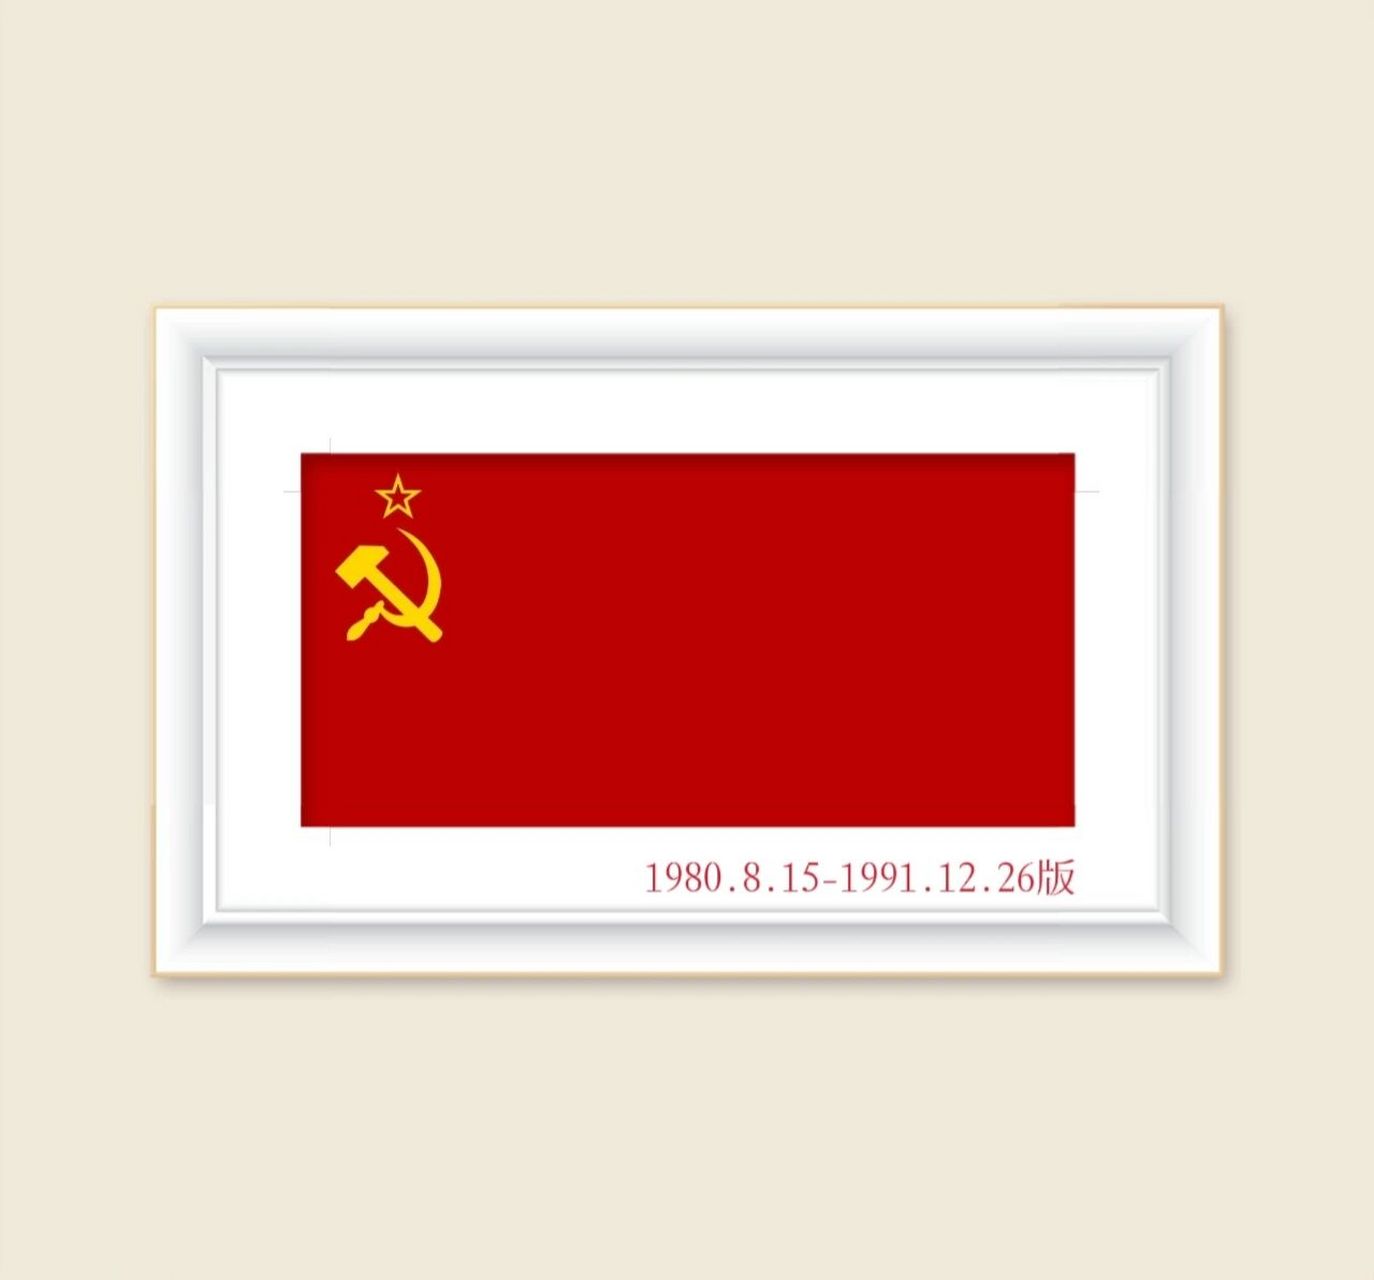 国旗:苏联1980年版 1980年8月15日,勃列日涅夫政府再度把国旗进行了